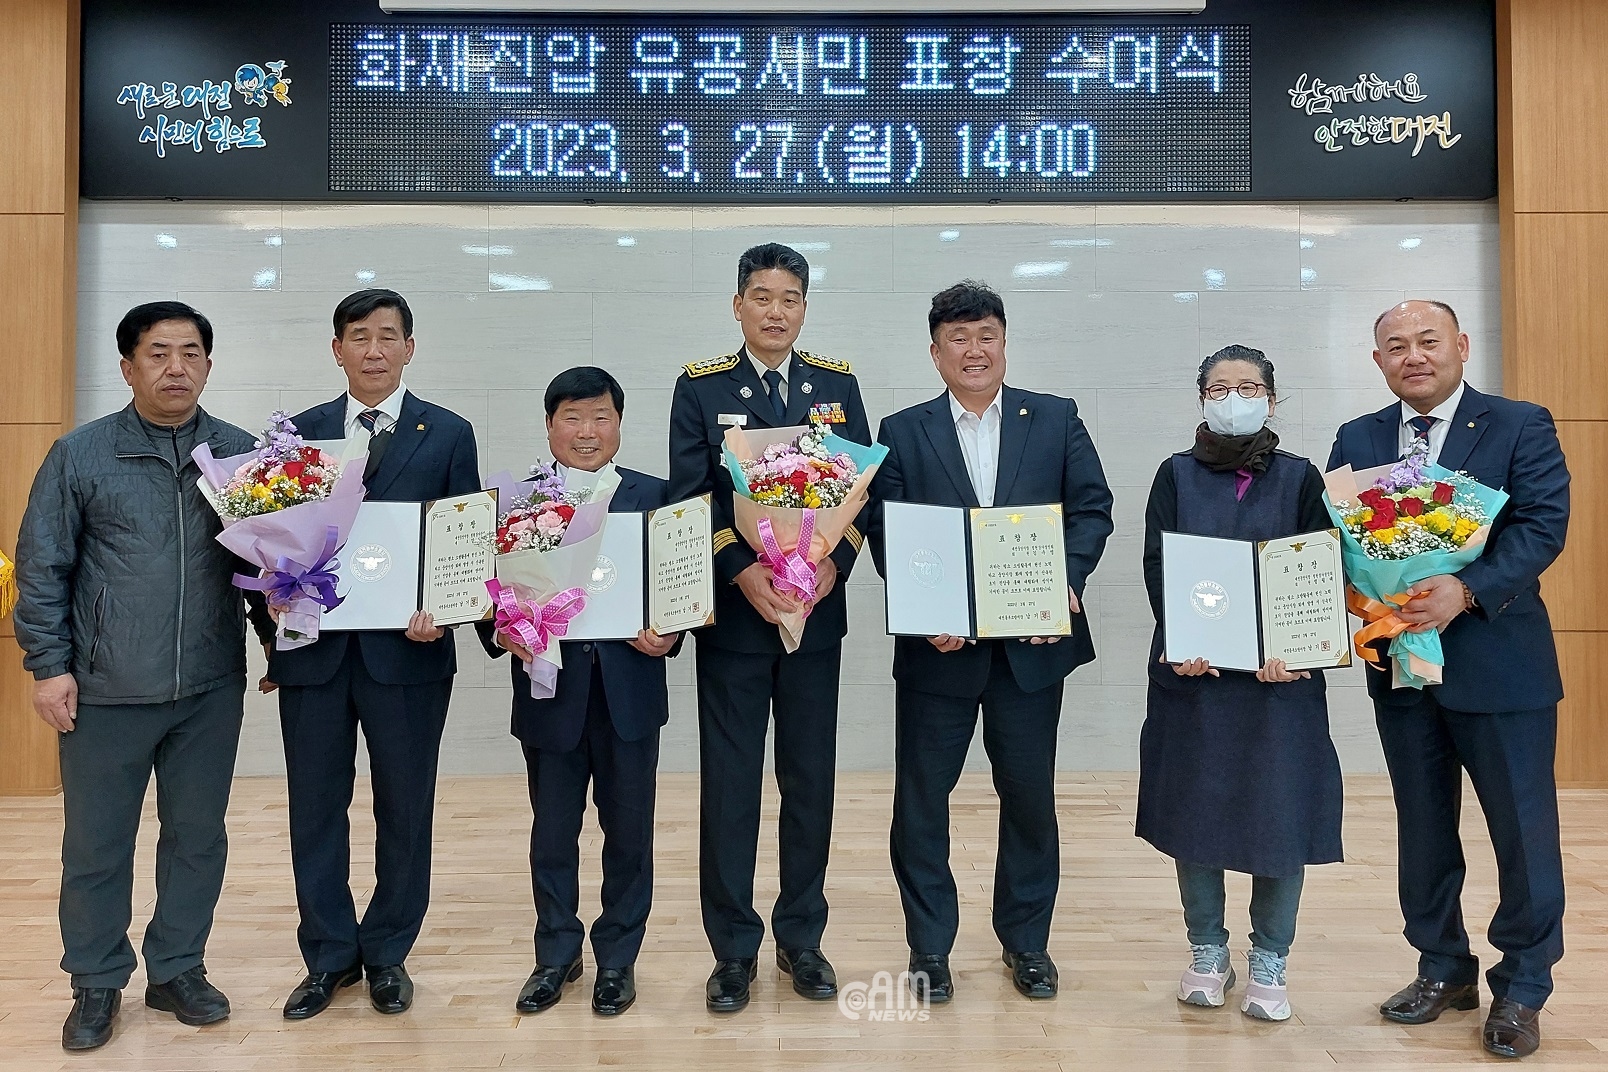 대전동부소방서, 화재진압 유공 시민 서장 표창 수여